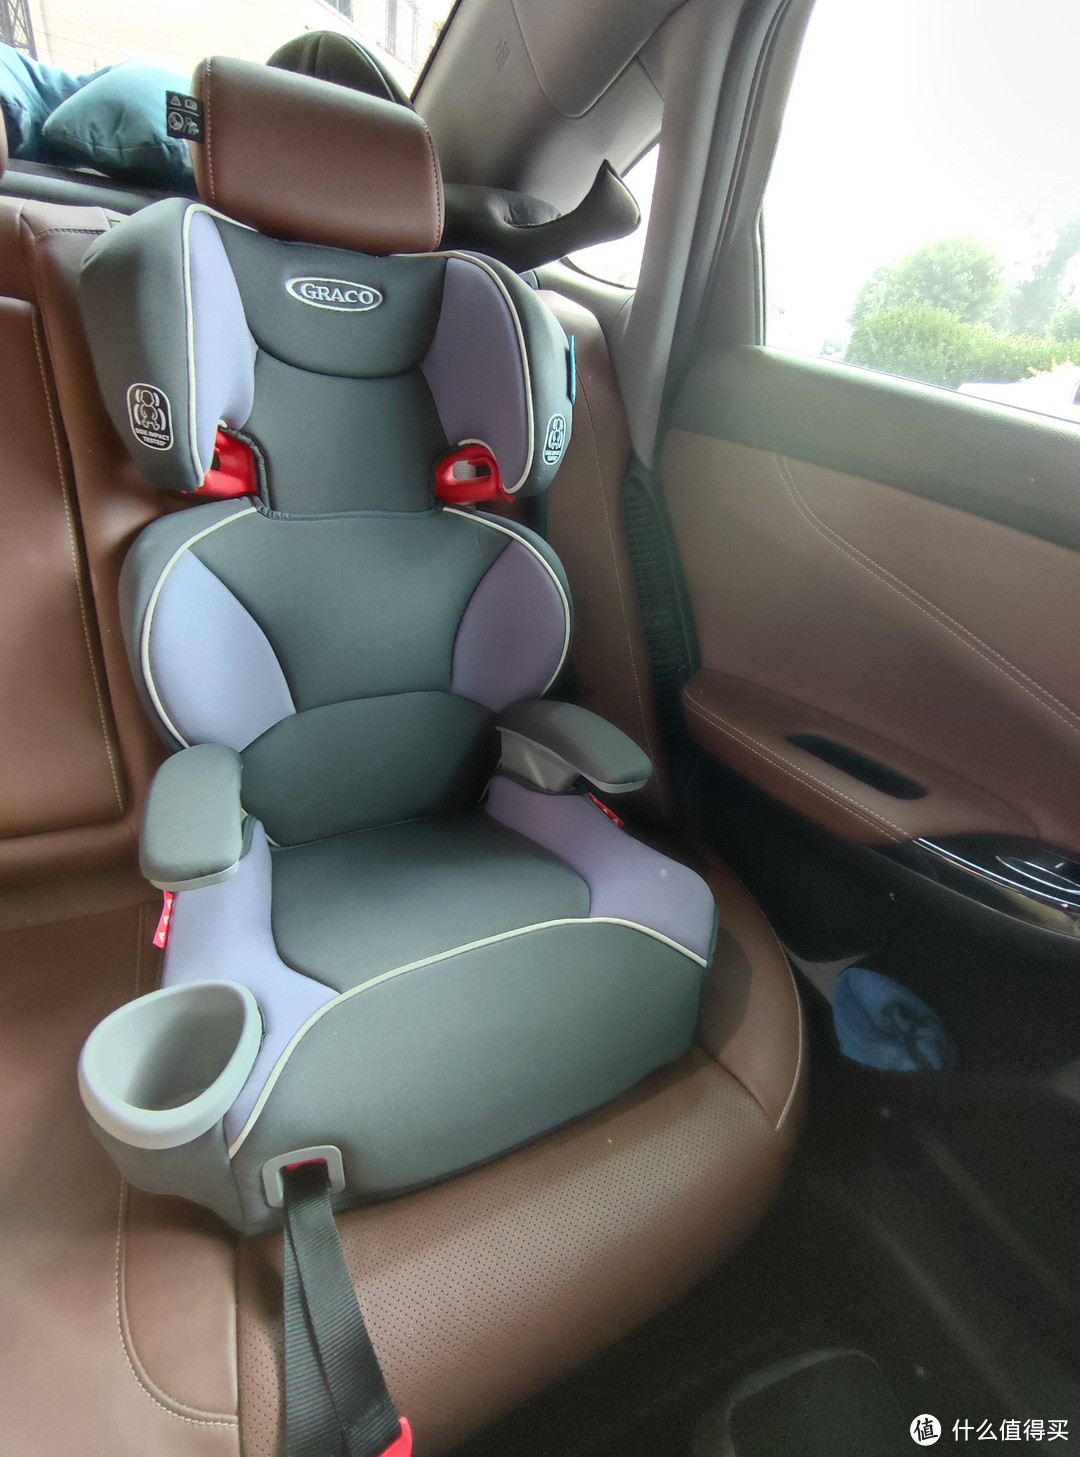 葛莱安全座椅&坐垫两用版开箱兼谈自己的安全座椅使用心得